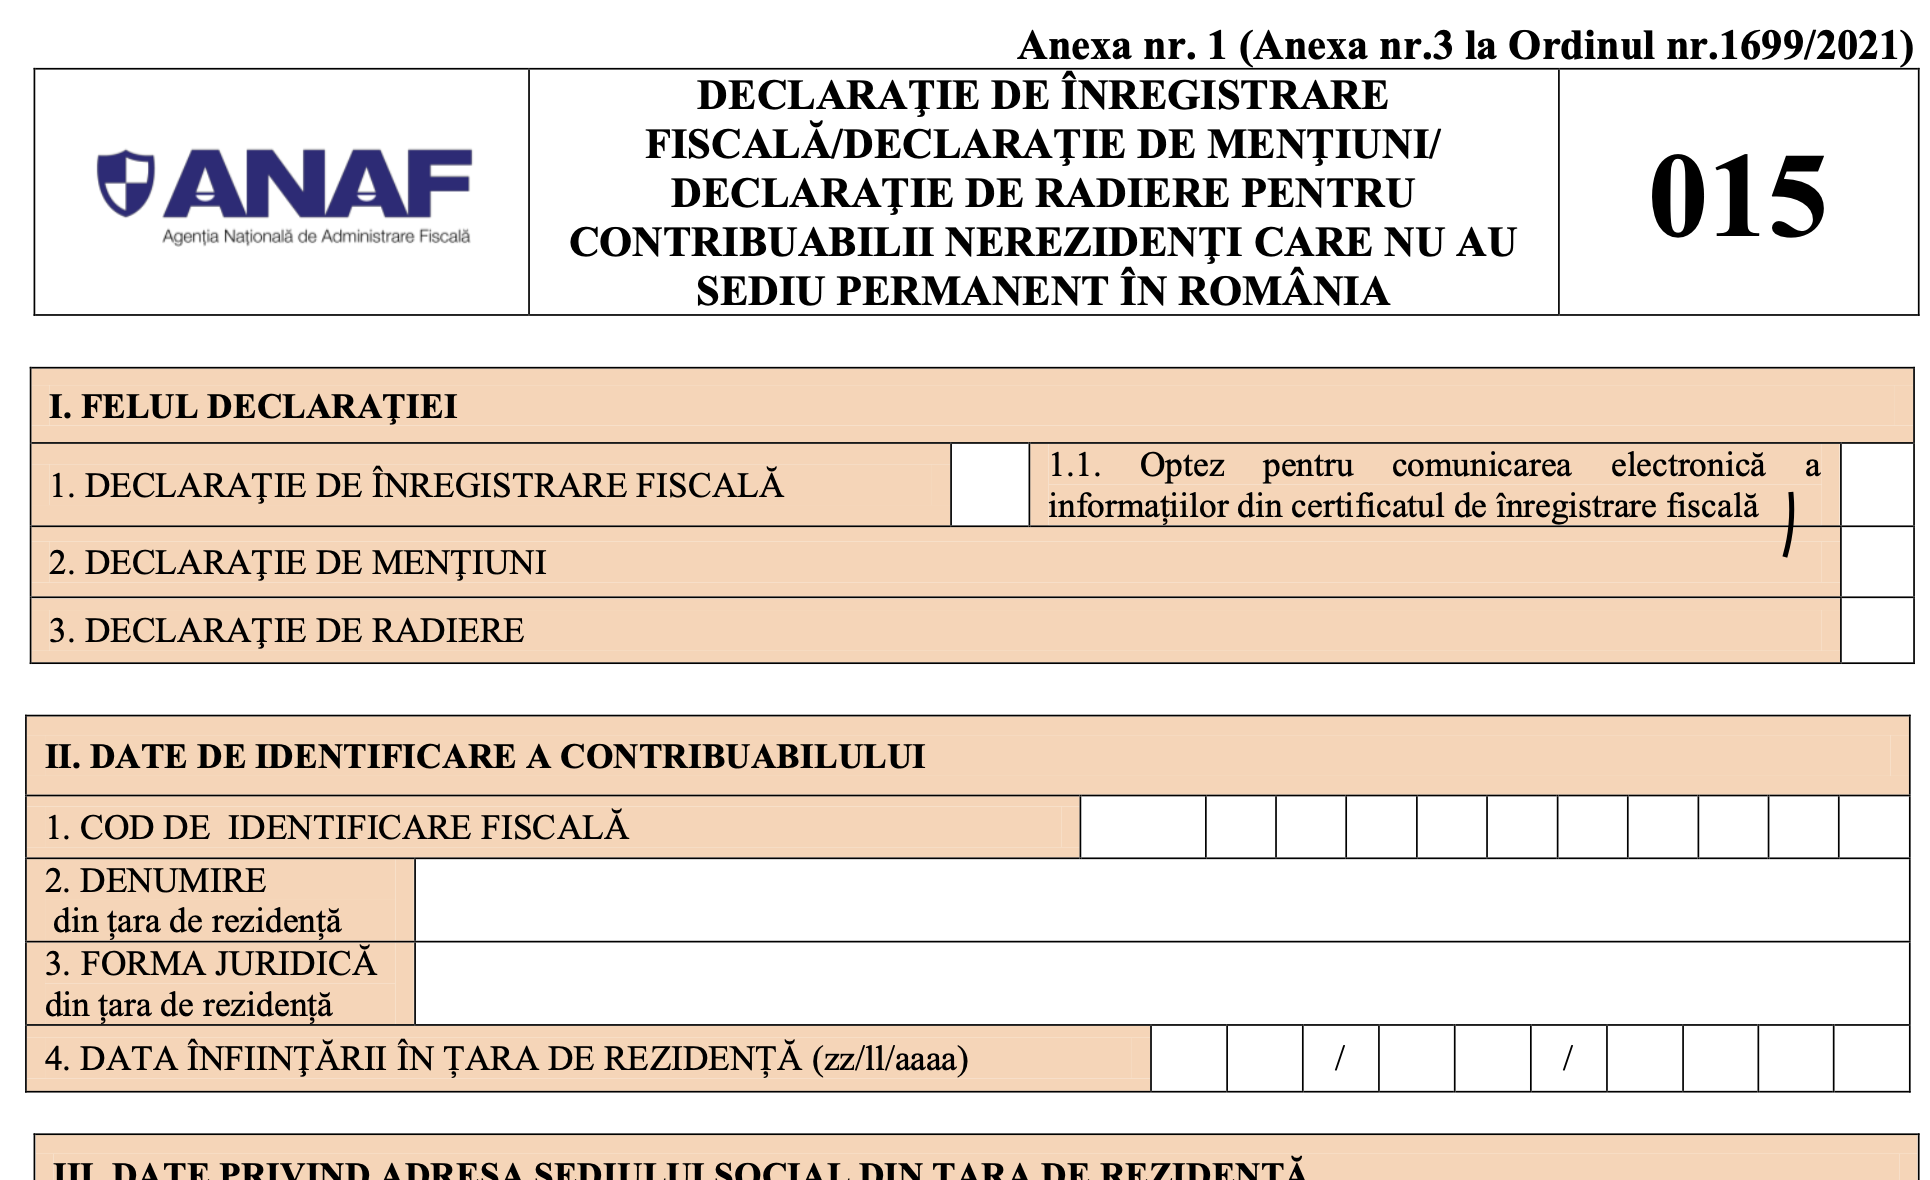 ANAF modifica formularele de inregistrare fiscala a contribuabililor (015, 030, 700) si tipurile de obligatii care formeaza vectorul fiscal